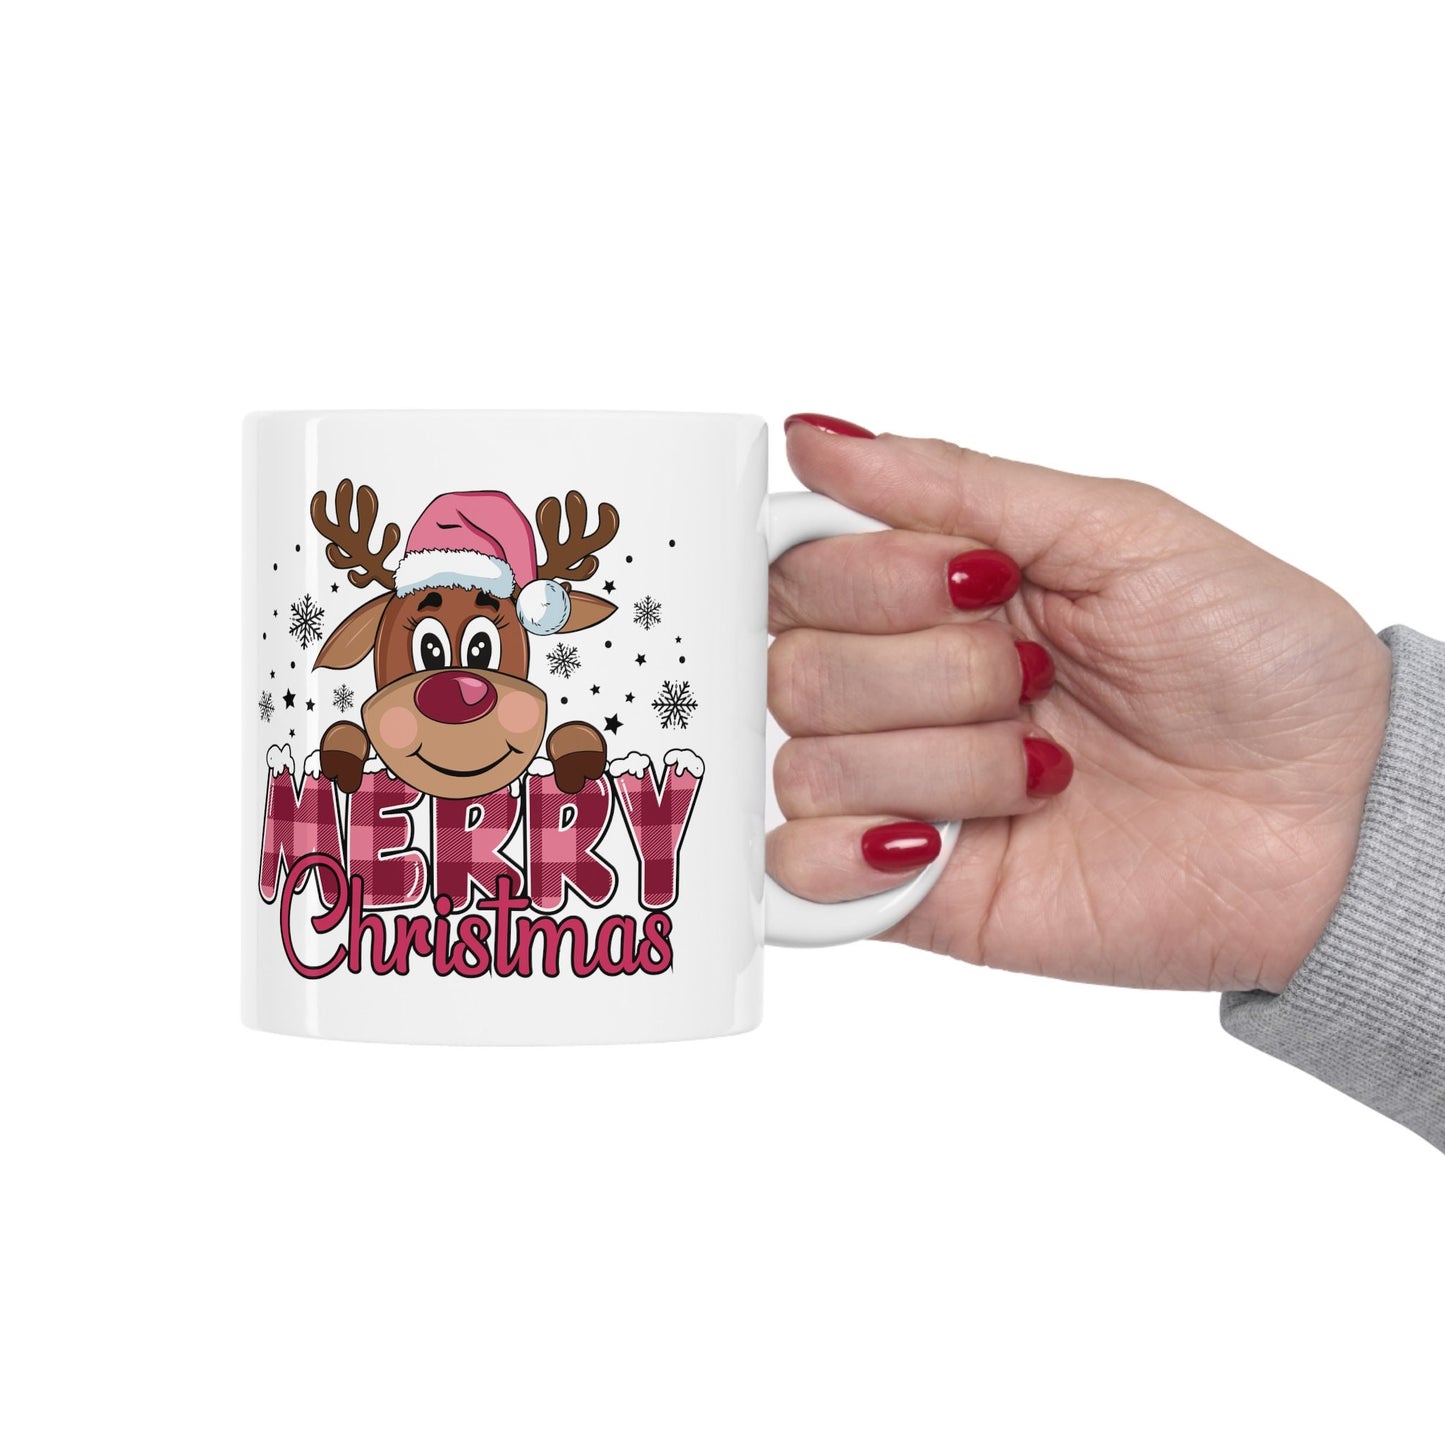 Reindeer Merry Christmas Mug, Perfect Holiday Cheer Coffee Mug, Gift Mug for Christmas Spirit, Cute Christmas mug for Family and friends